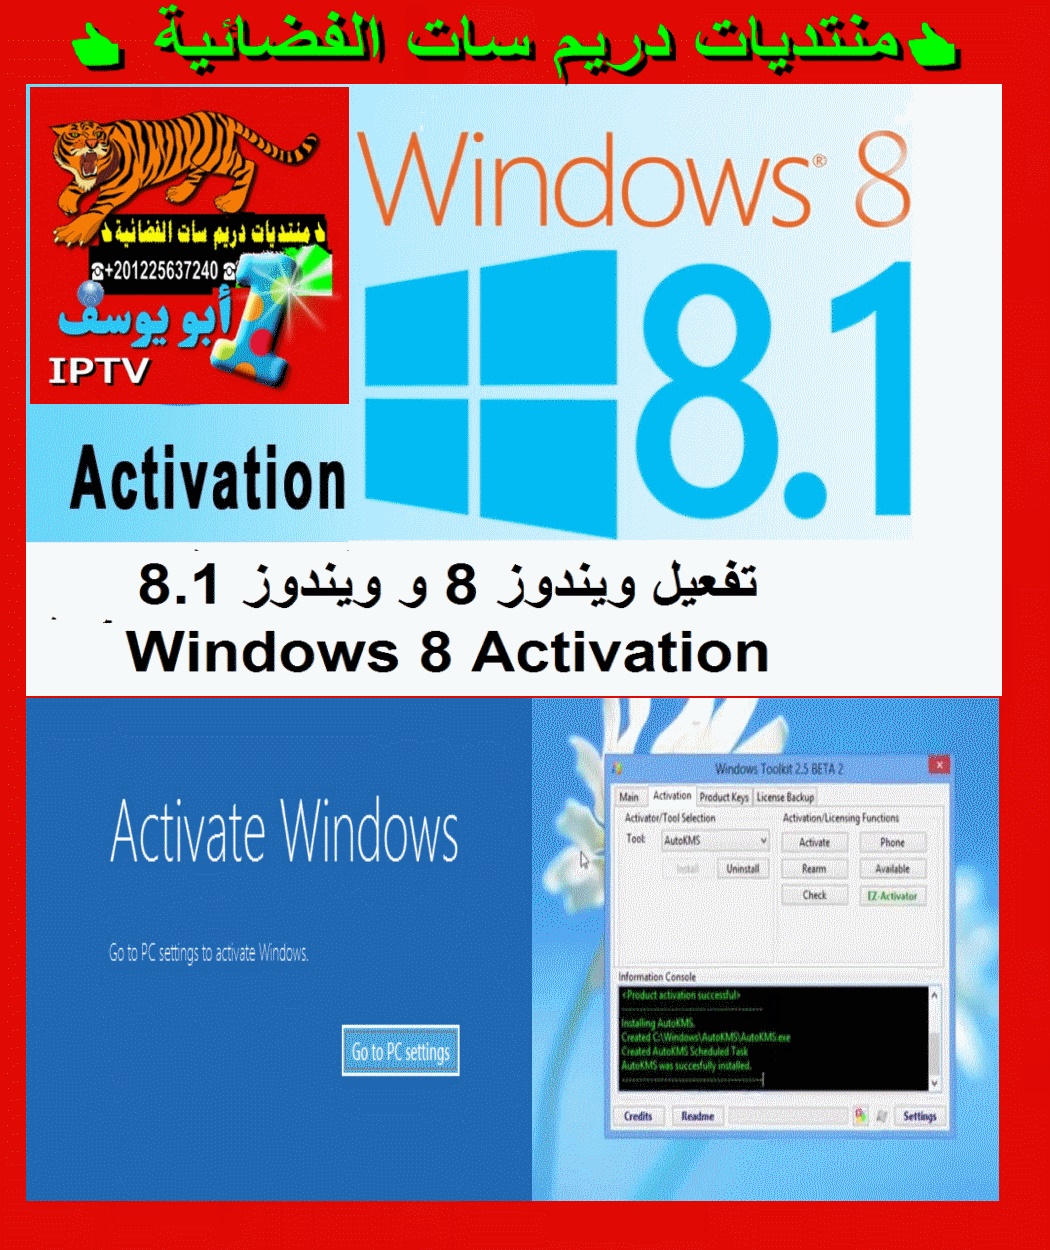 حصريا علي منتديات دريم سات الفضائية اداة تفعيل ويندوز 8 و ويندوز 8.1 في دقيقة واحدة بسهولة - Windows P_1512shoom1